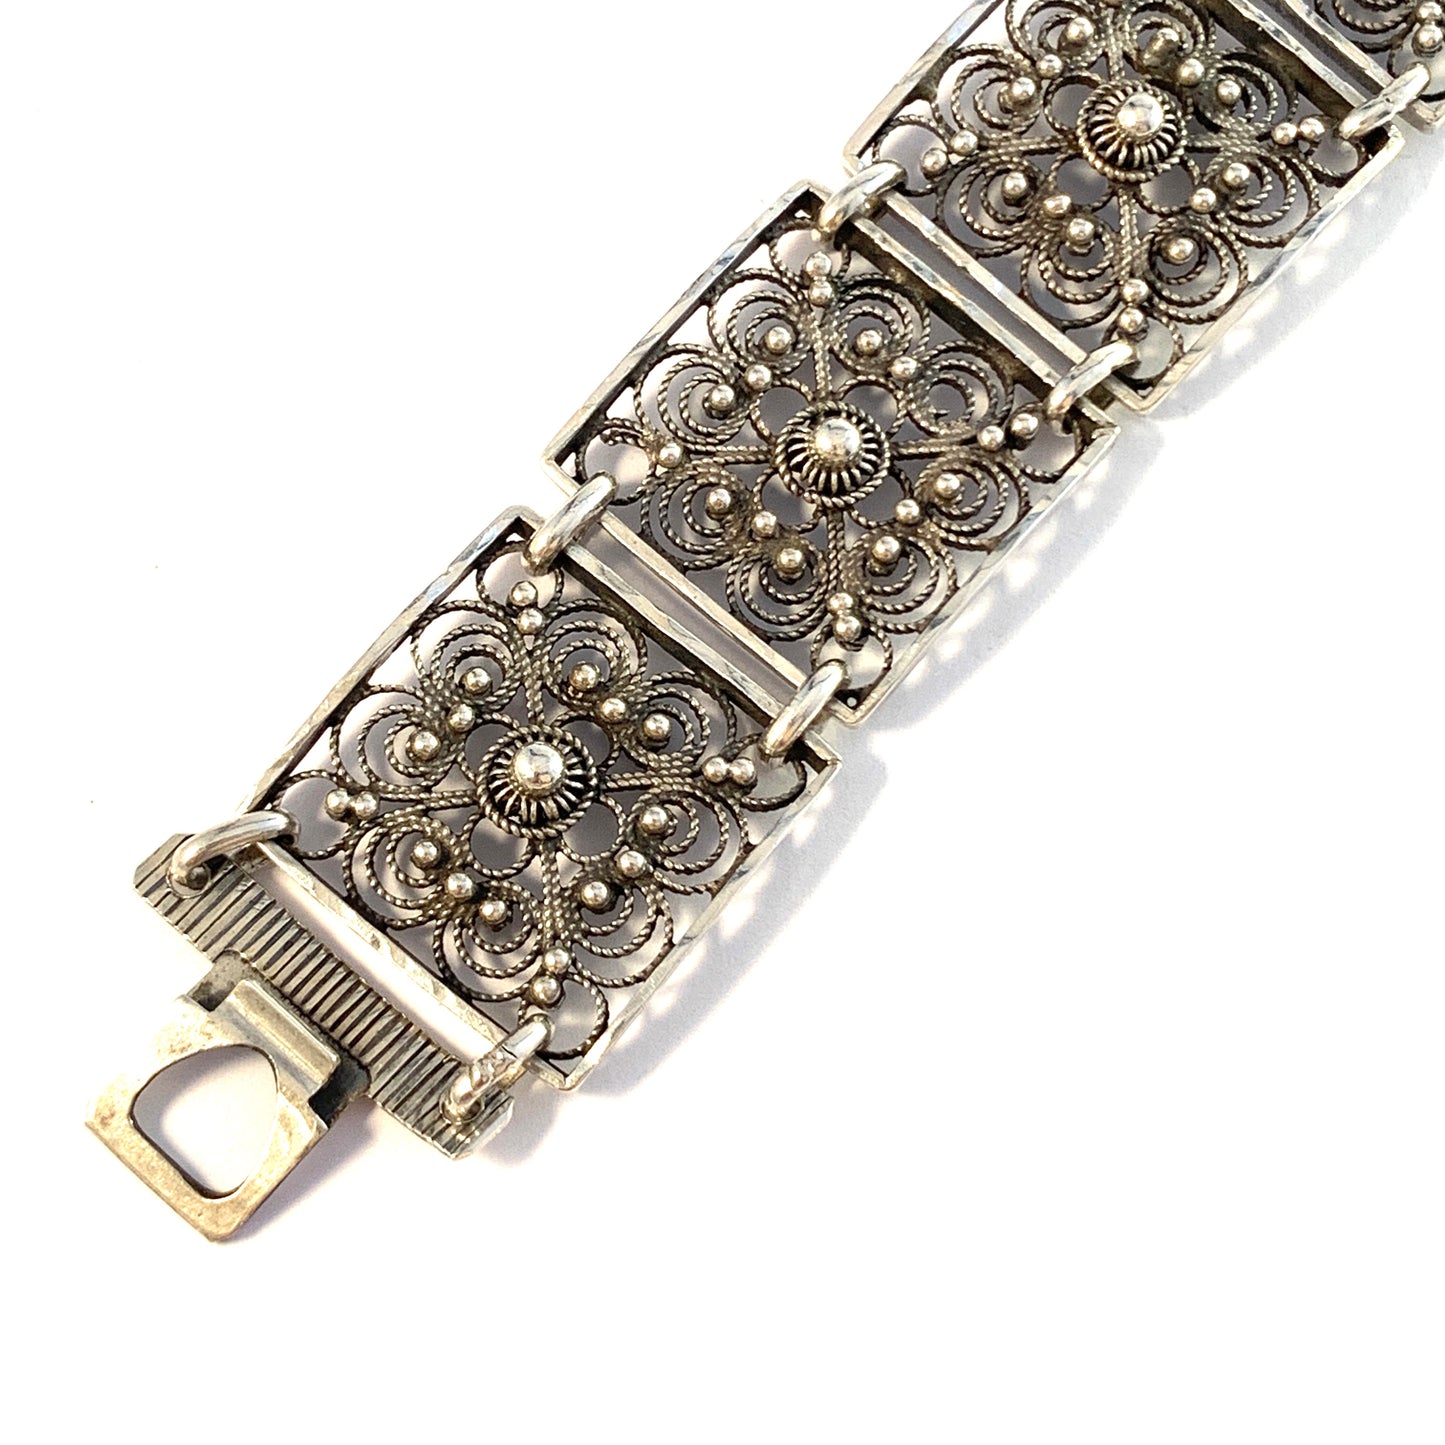 Henrik Lund, Norway c 1930-40s. Vintage Solid Silver Link Bracelet. Signed